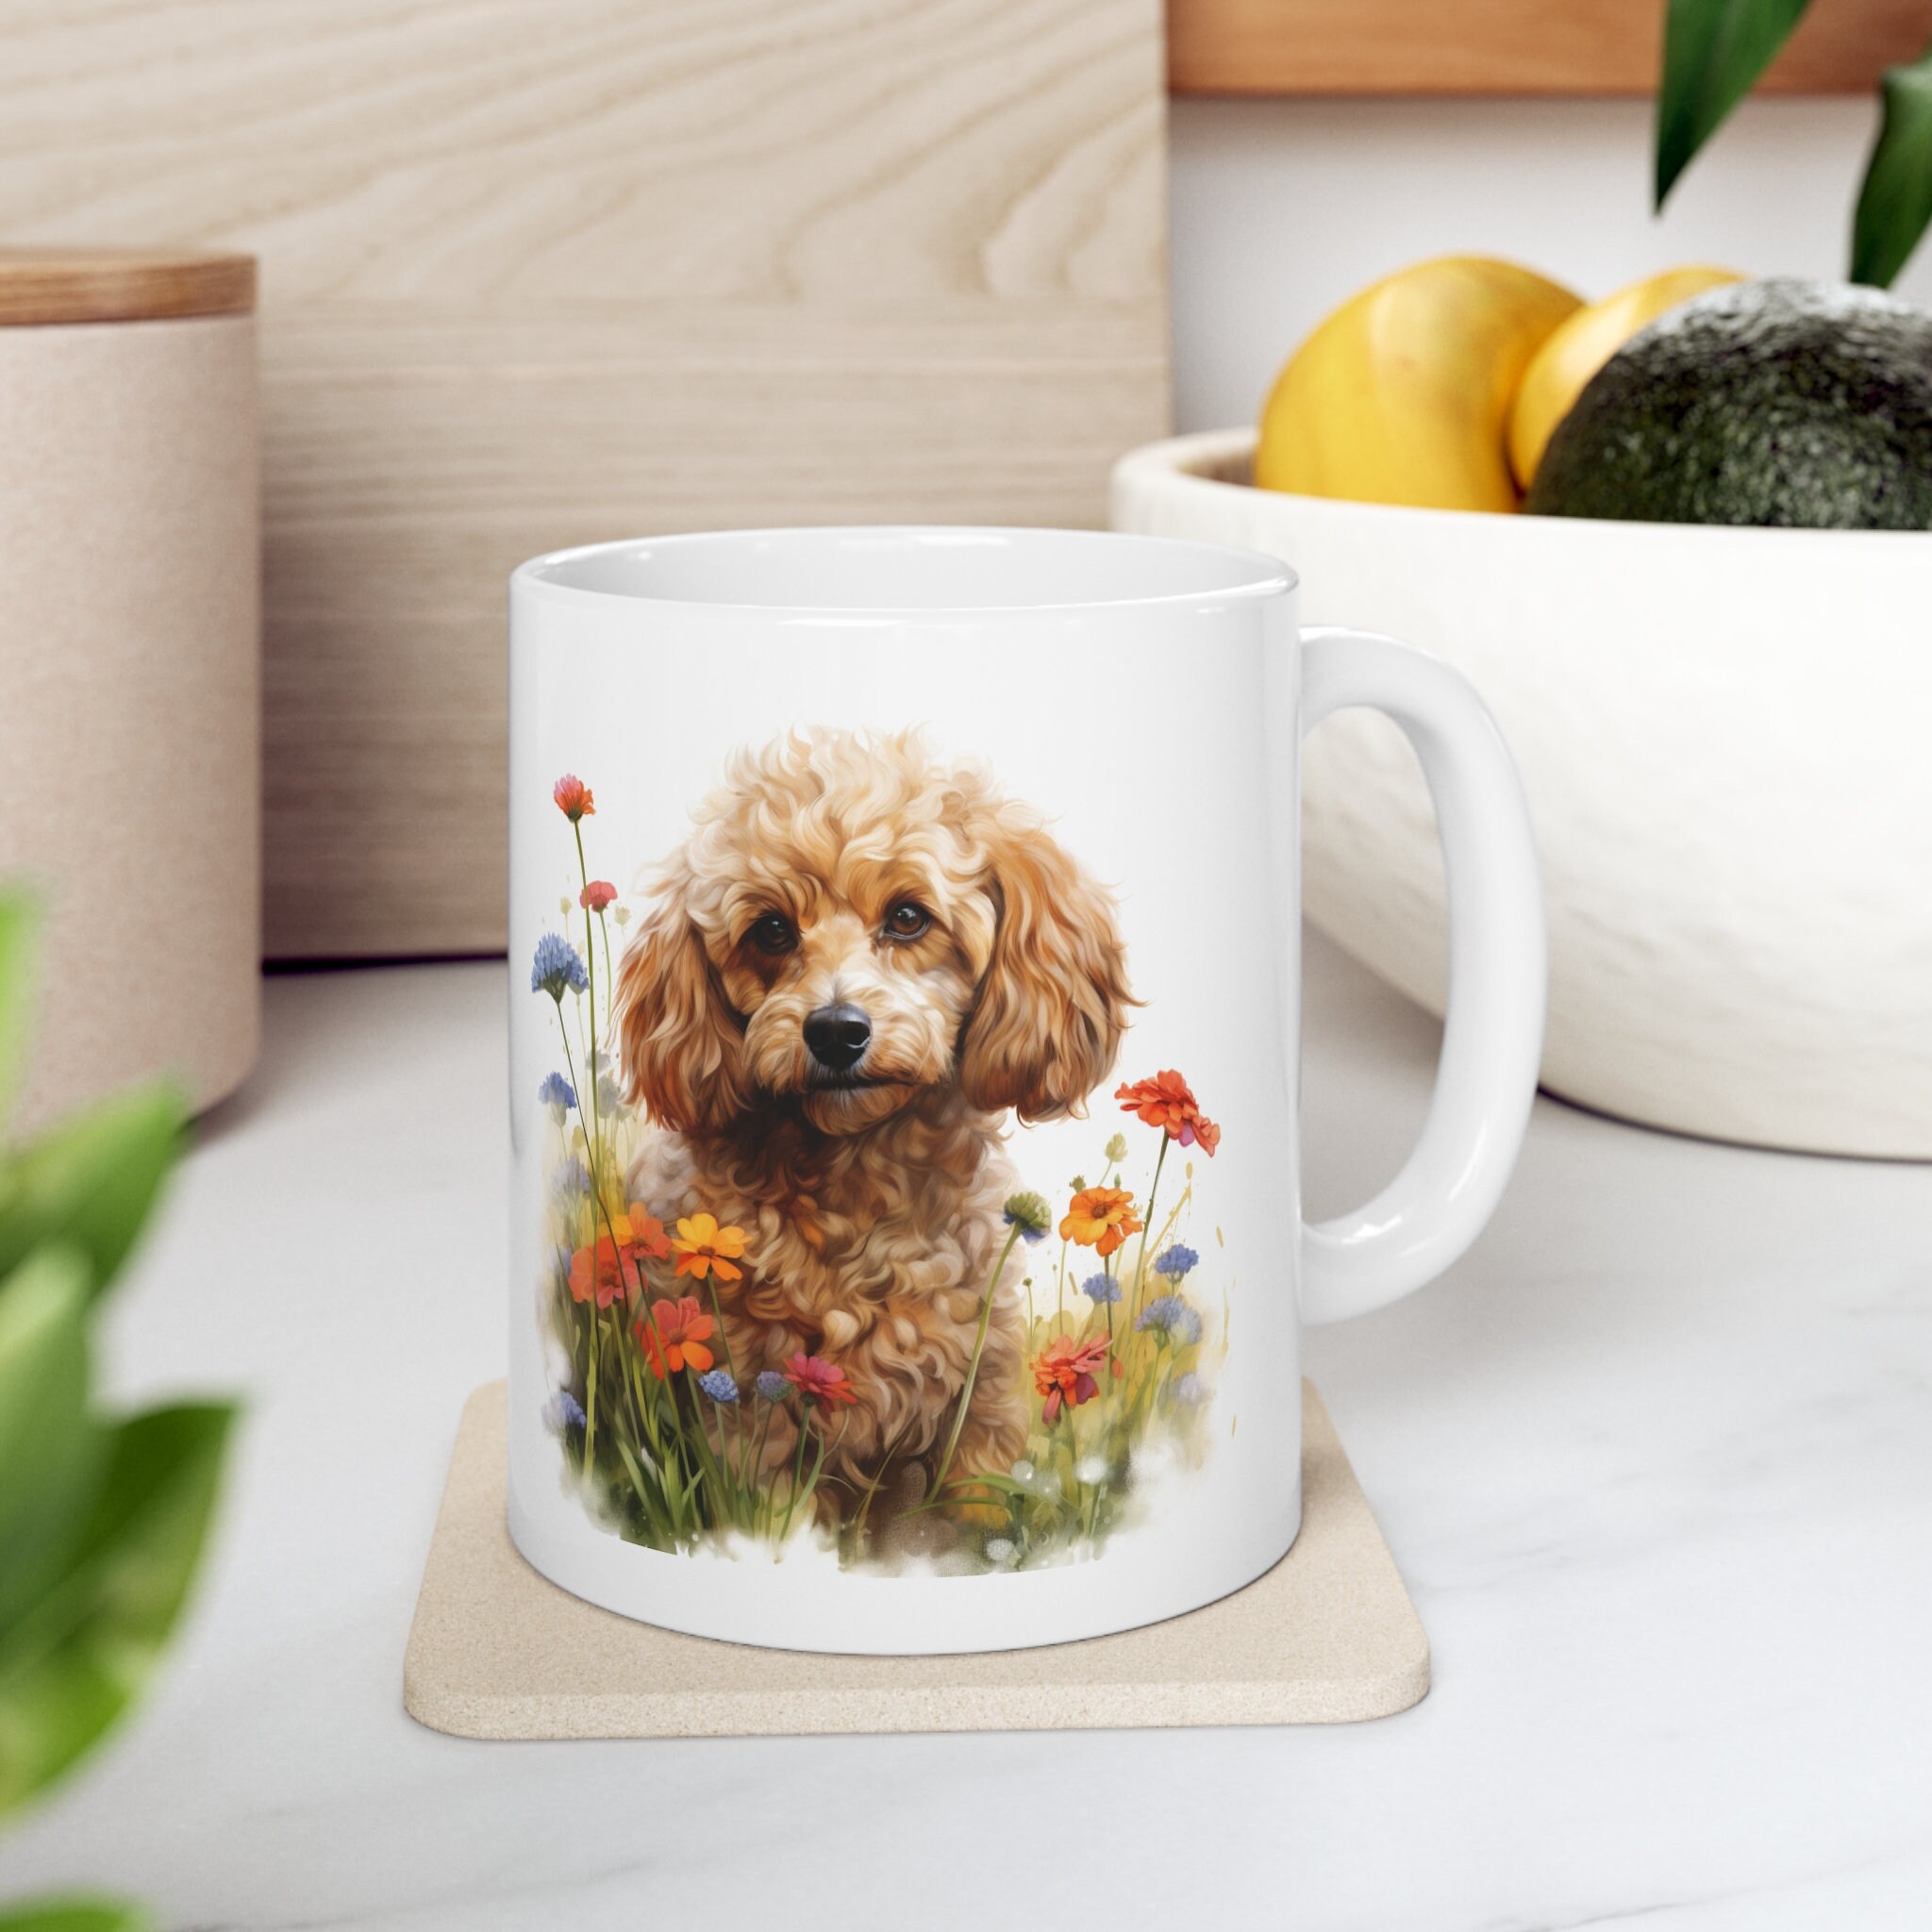 Discover トイプードル プードル マグカップ 約350ml 可愛い動物 犬 アニマル コーヒーカップ ギフト Cute Poodle